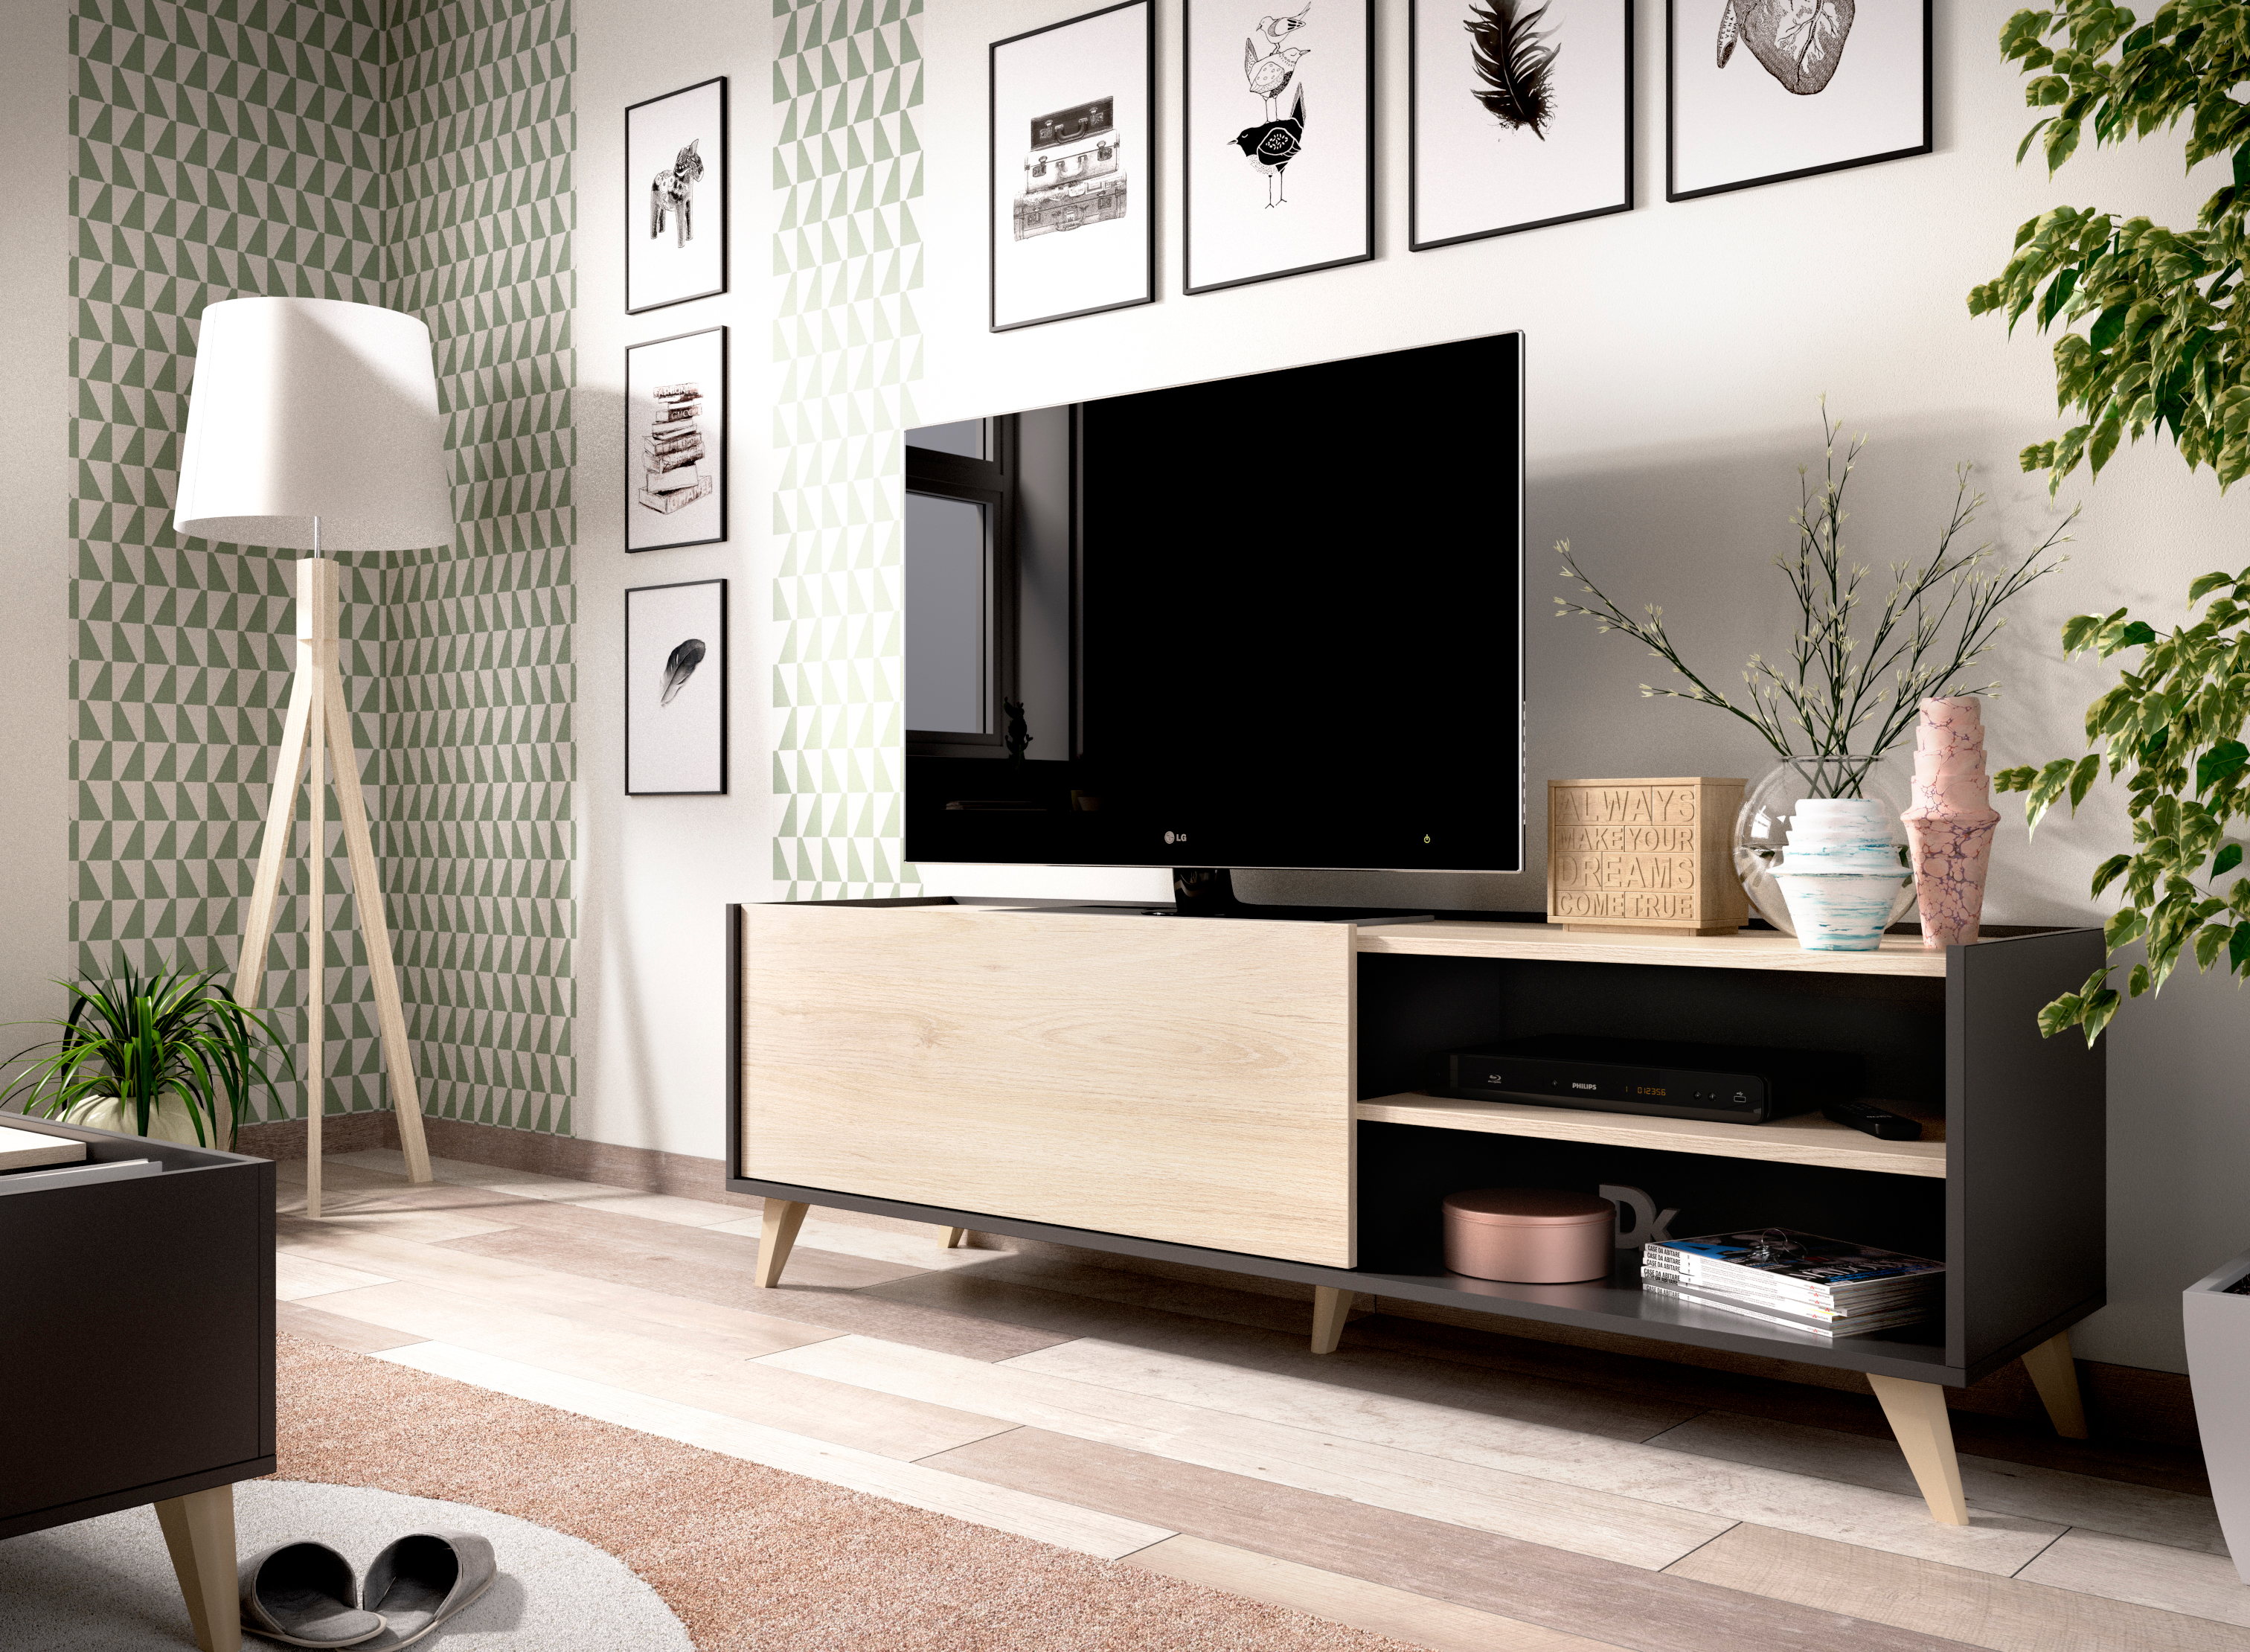 Mueble TV Piero - muebles polque - venta online - tienda muebles